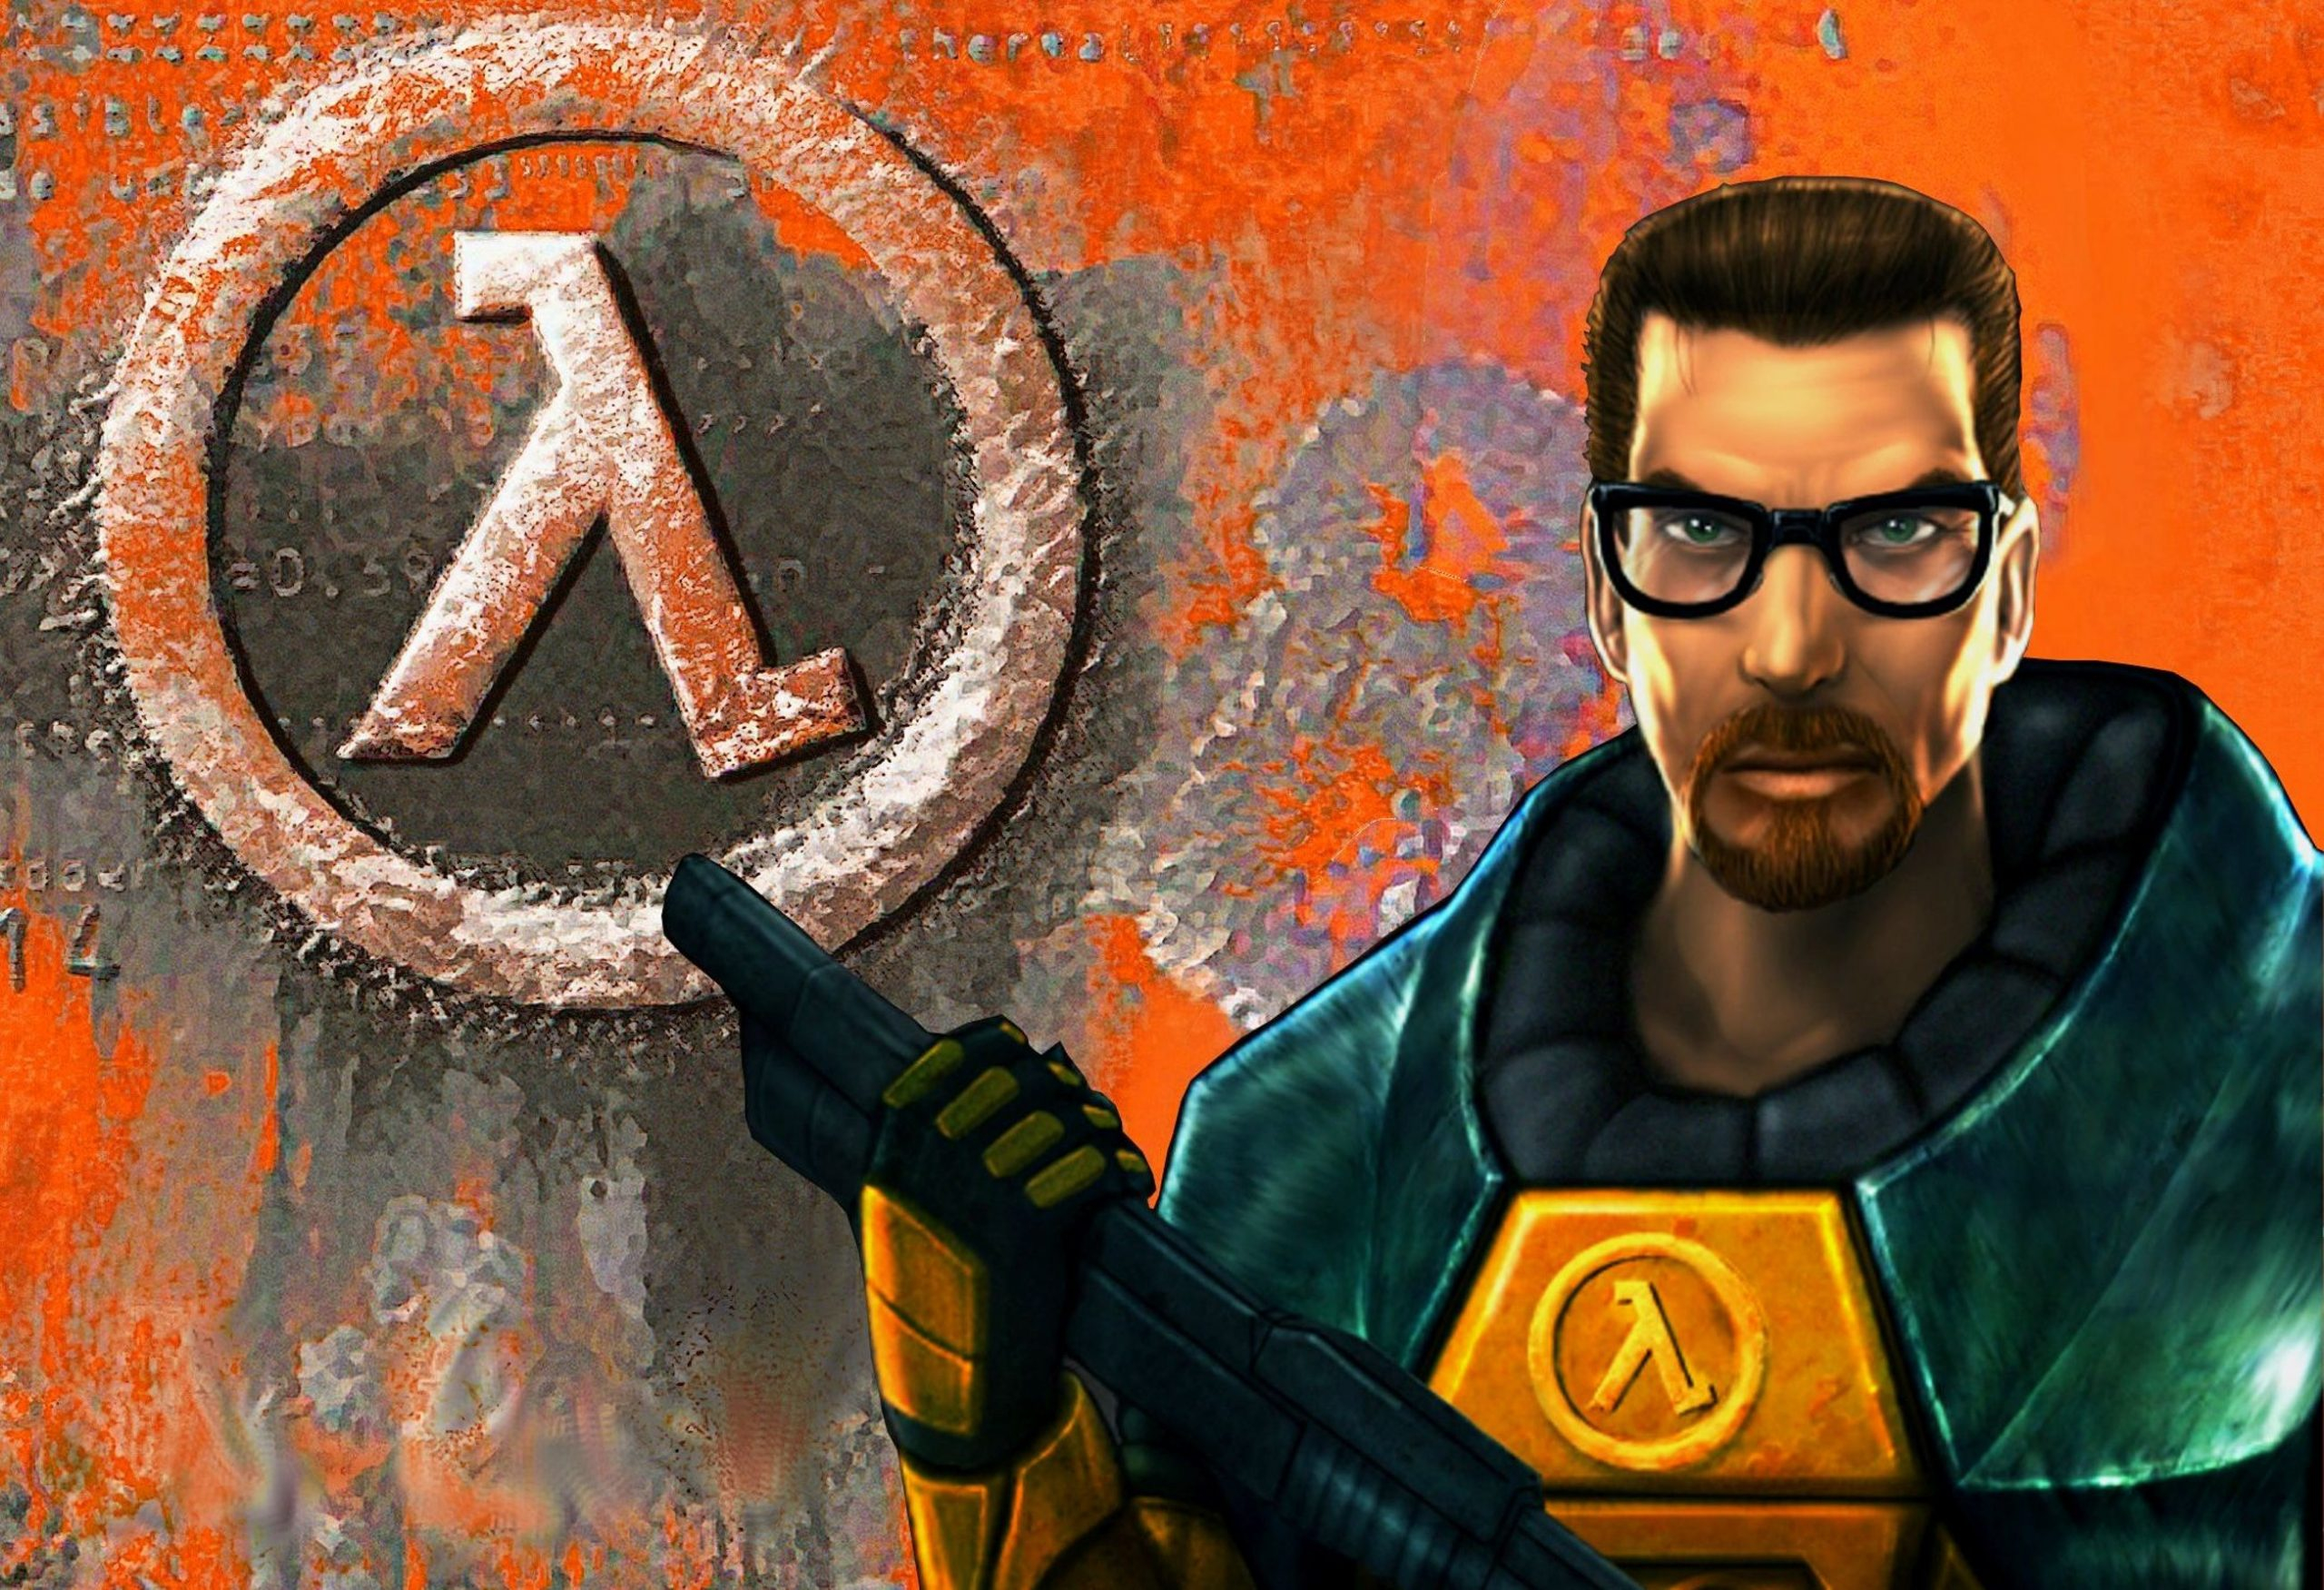 Обложка игры Half-Life